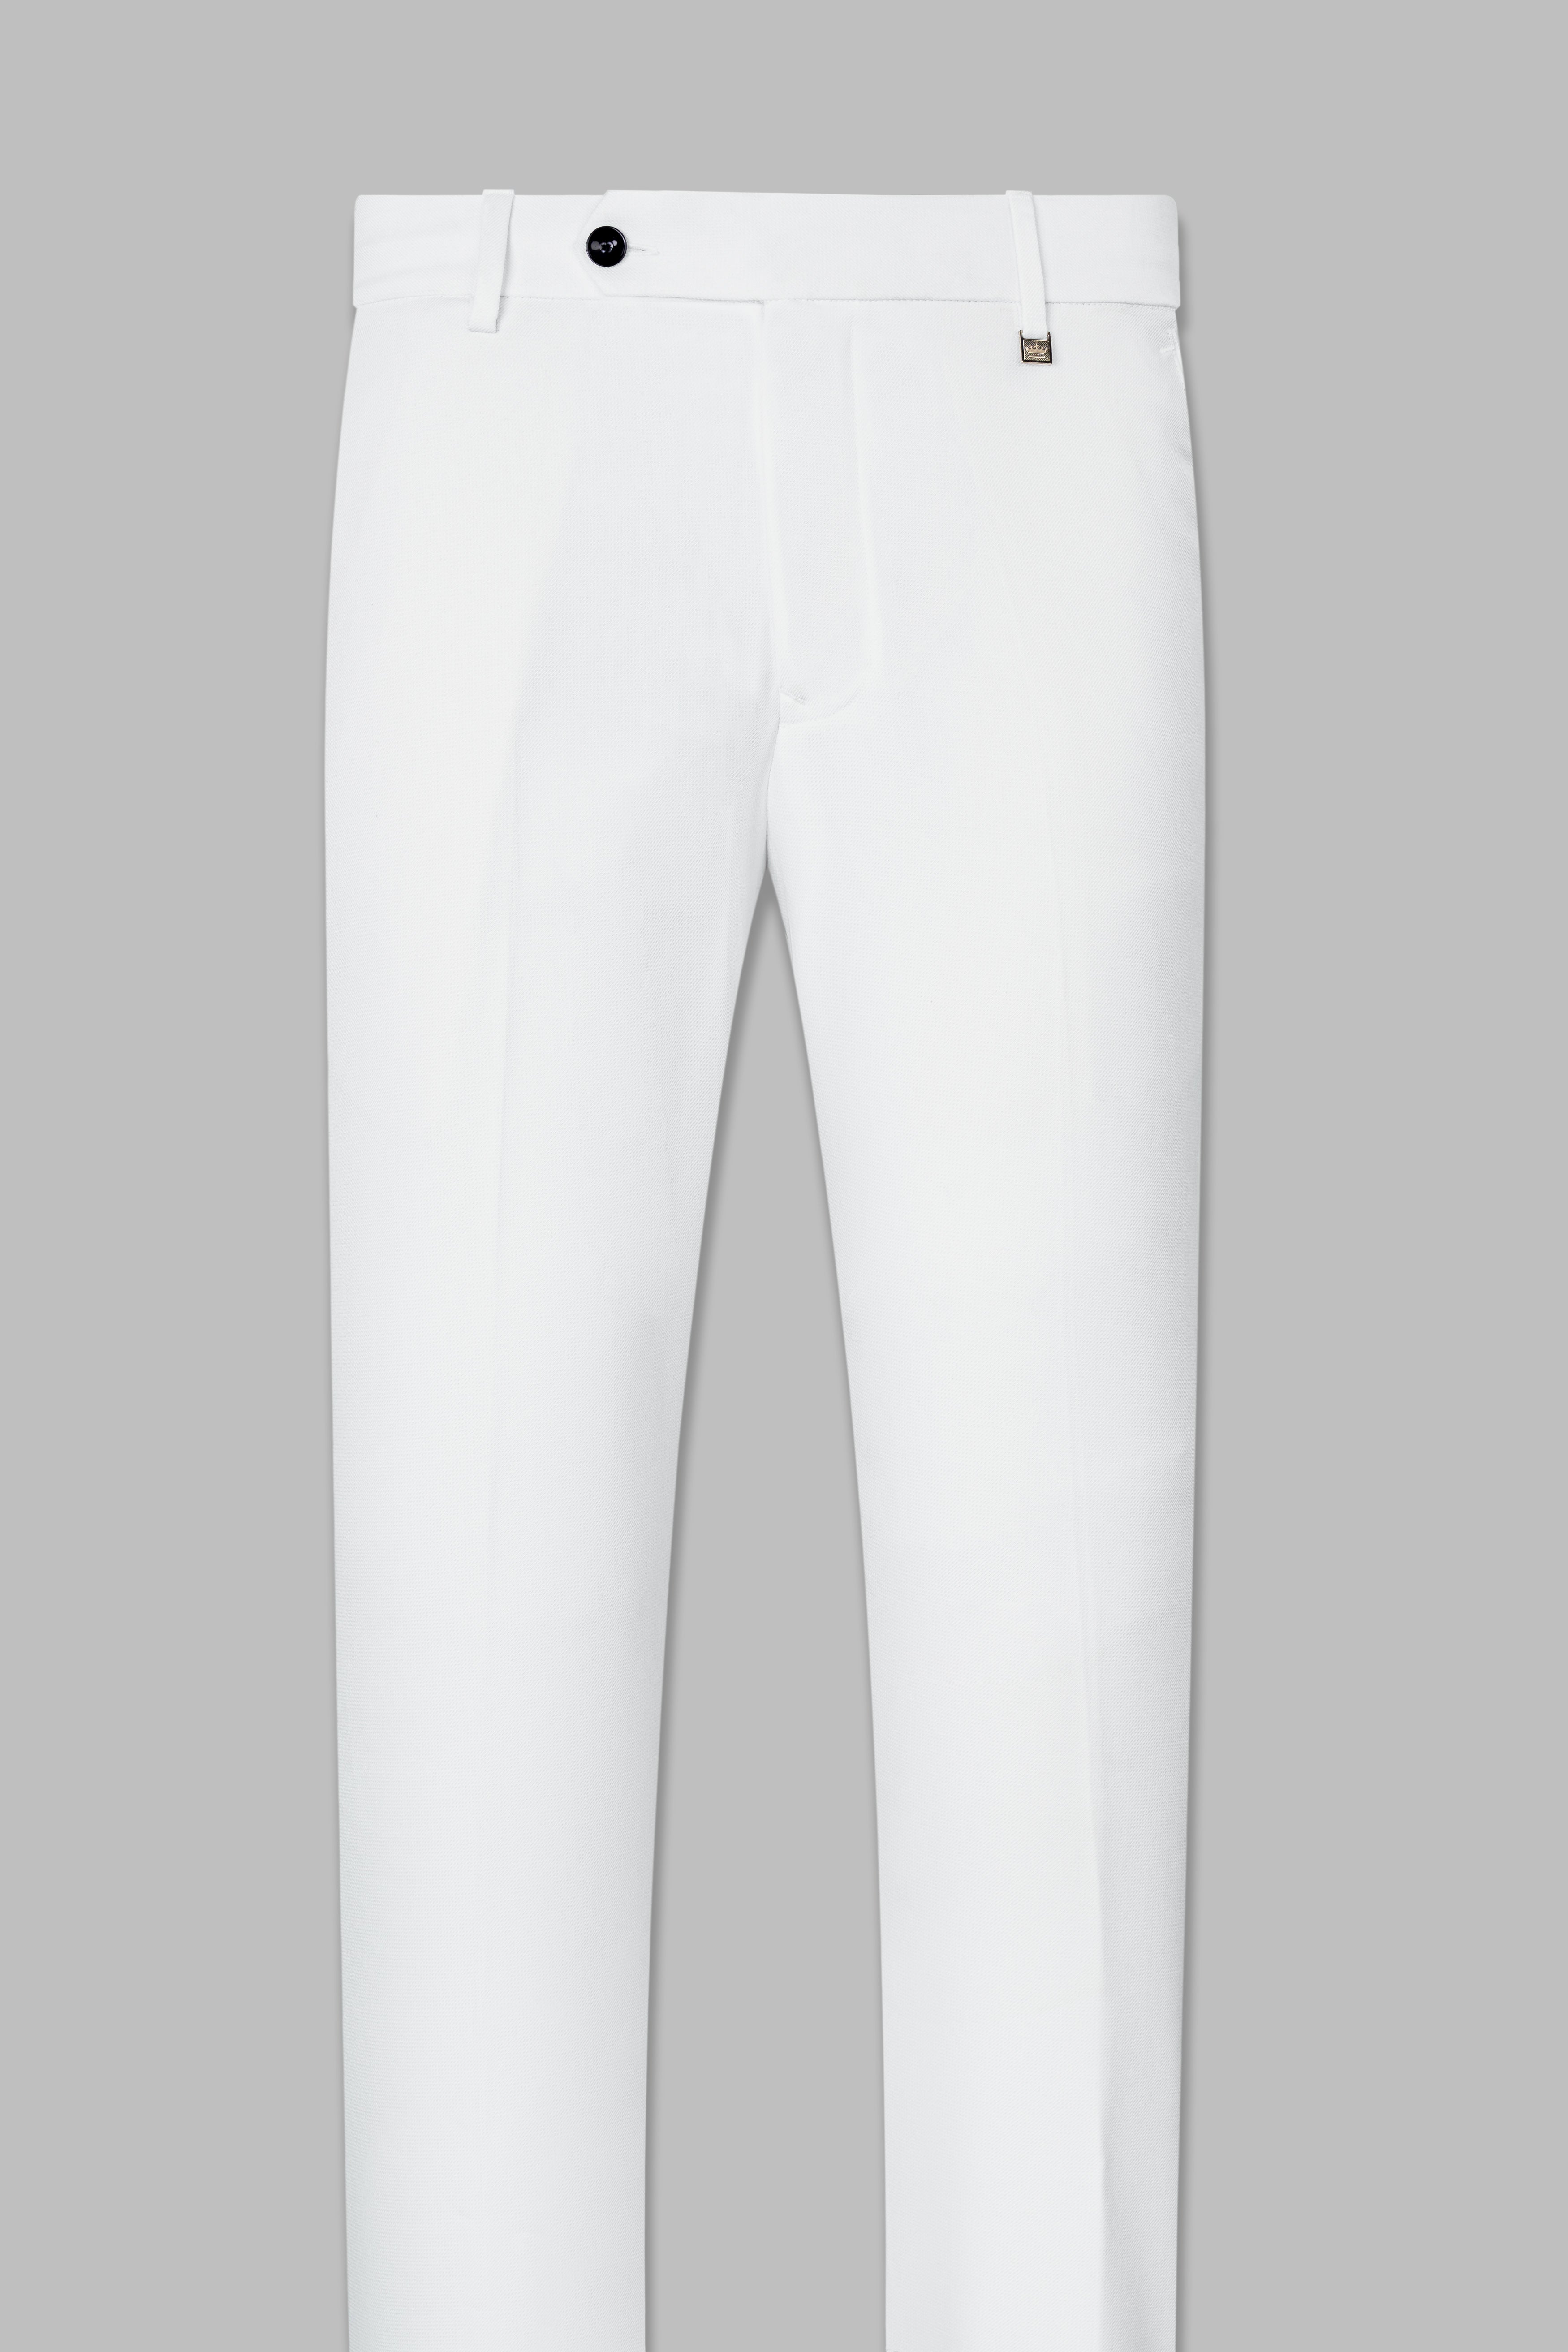 Bright White Wool Rich Pant T2815-28, T2815-30, T2815-32, T2815-34, T2815-36, T2815-38, T2815-40, T2815-42, T2815-44